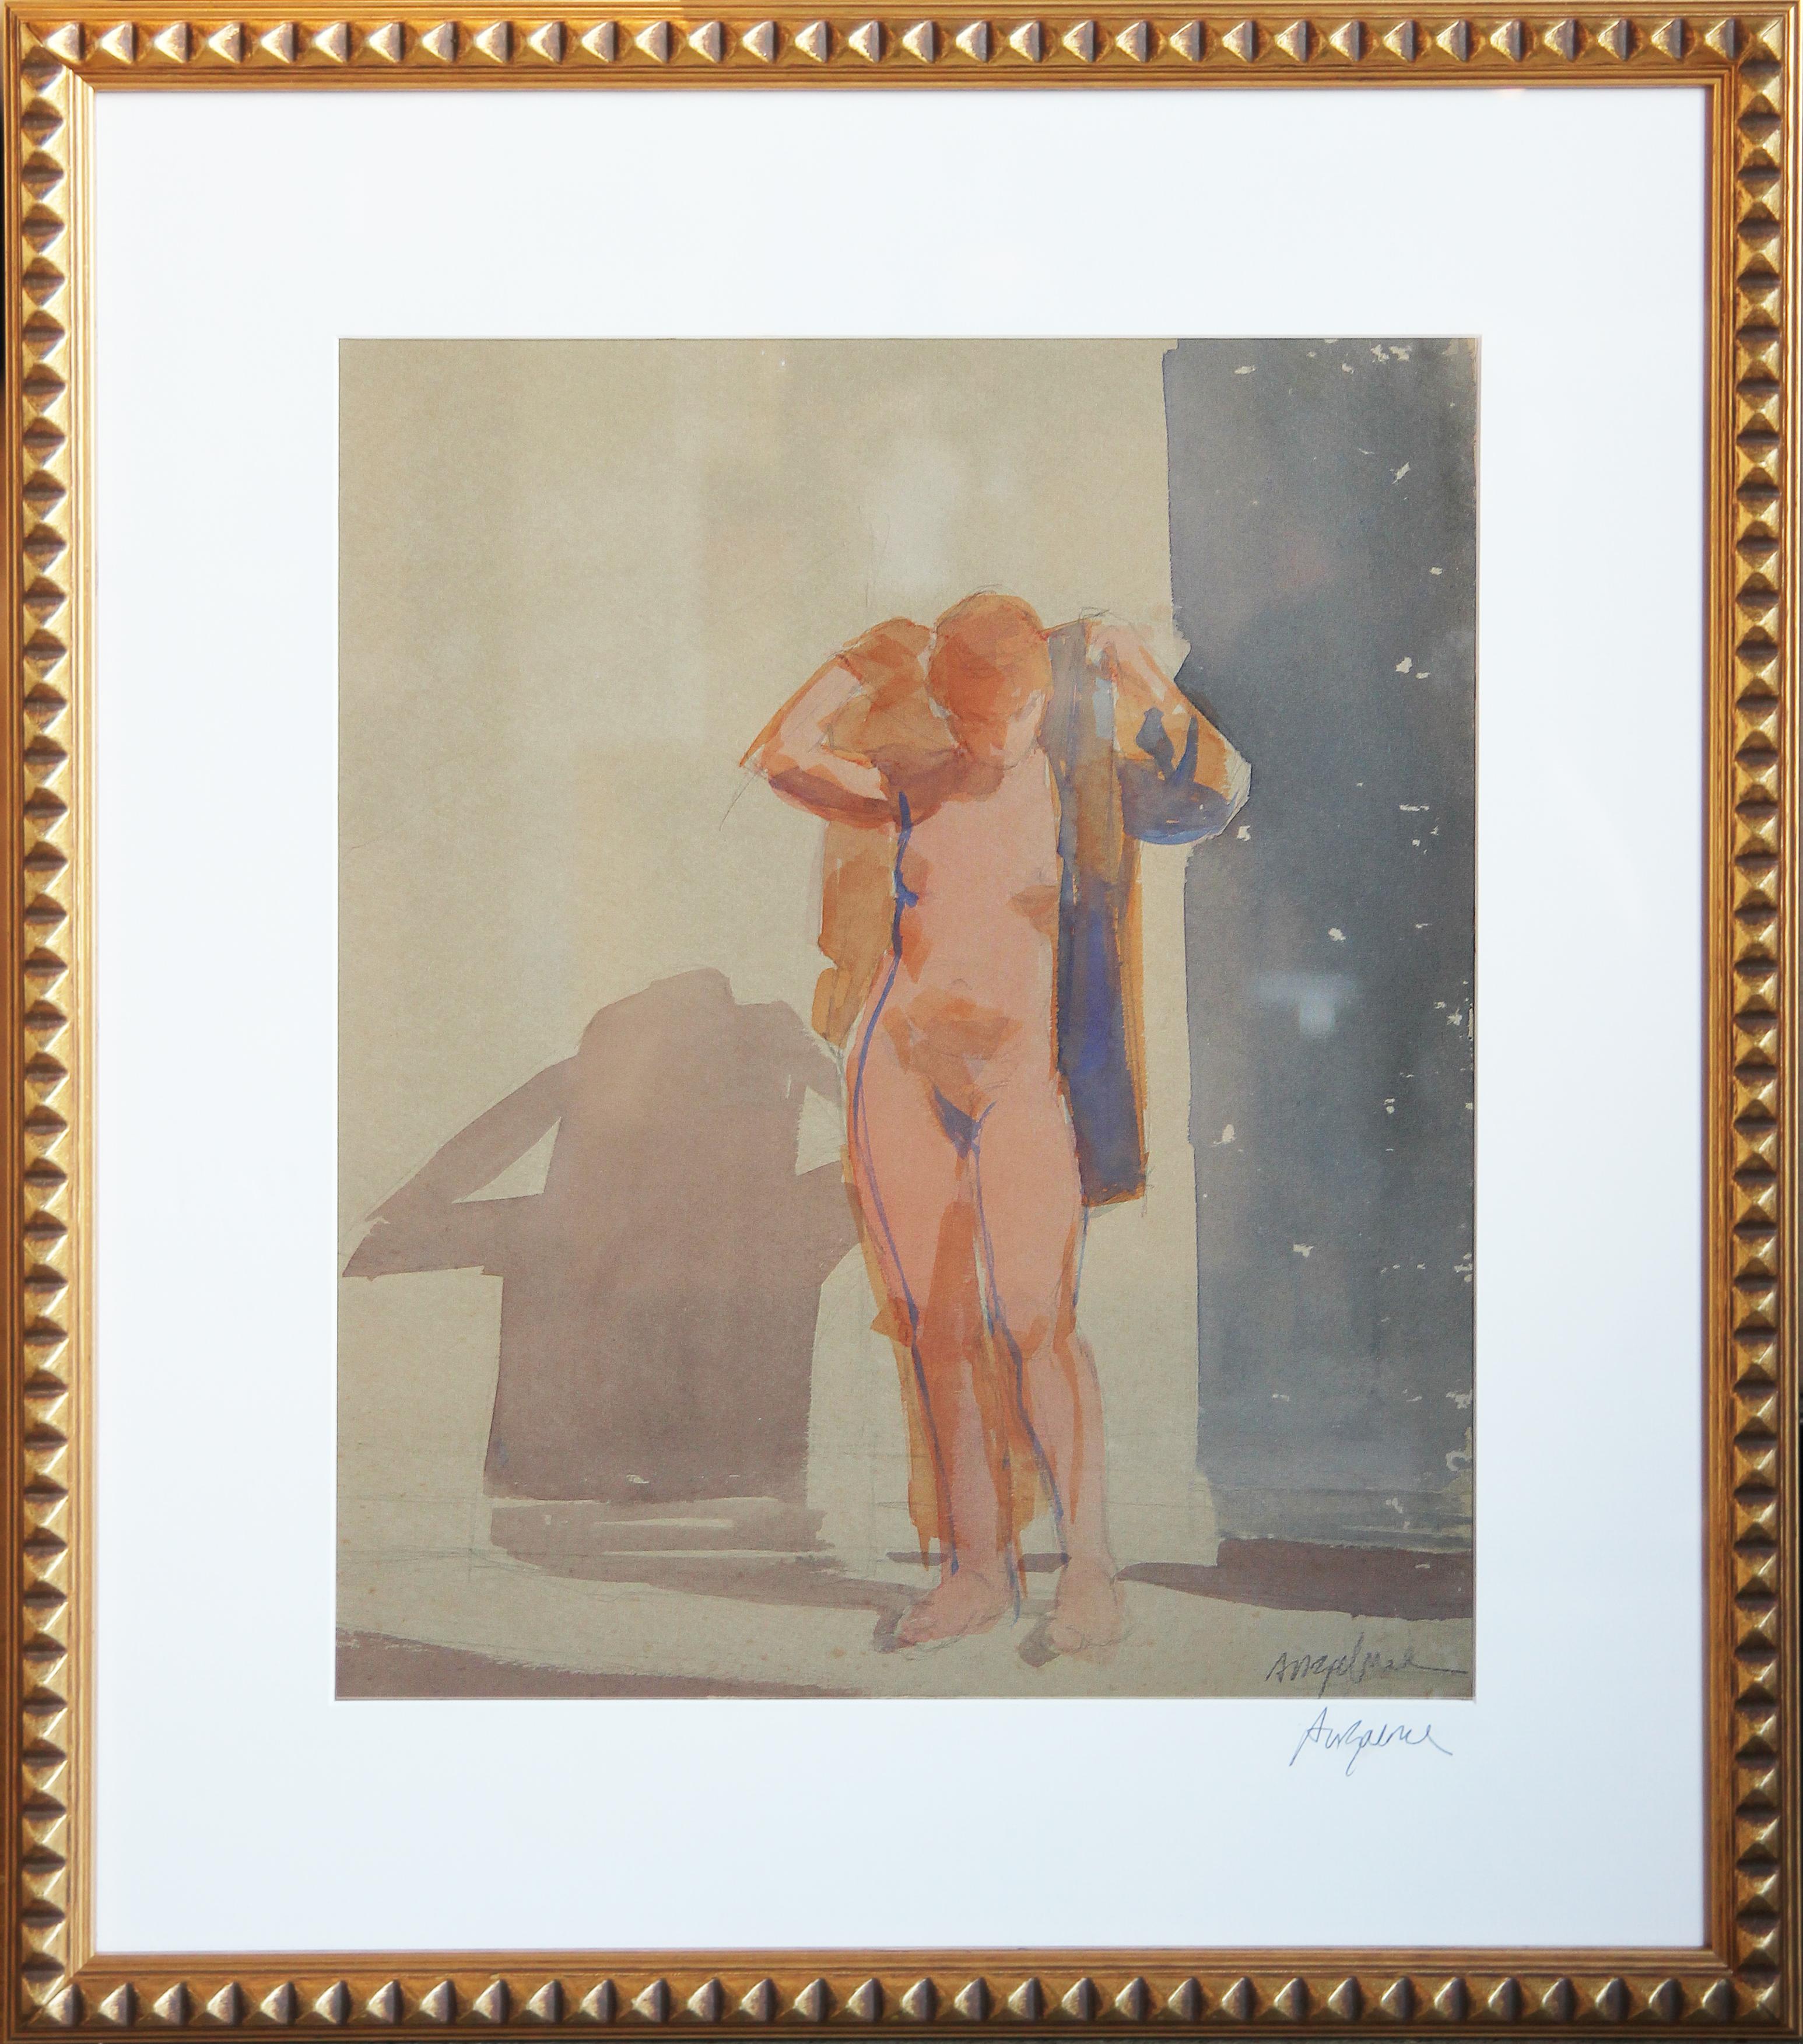 Abstraktes figuratives Aktgemälde in Gouache mit rotem Haar einer weiblichen Figur